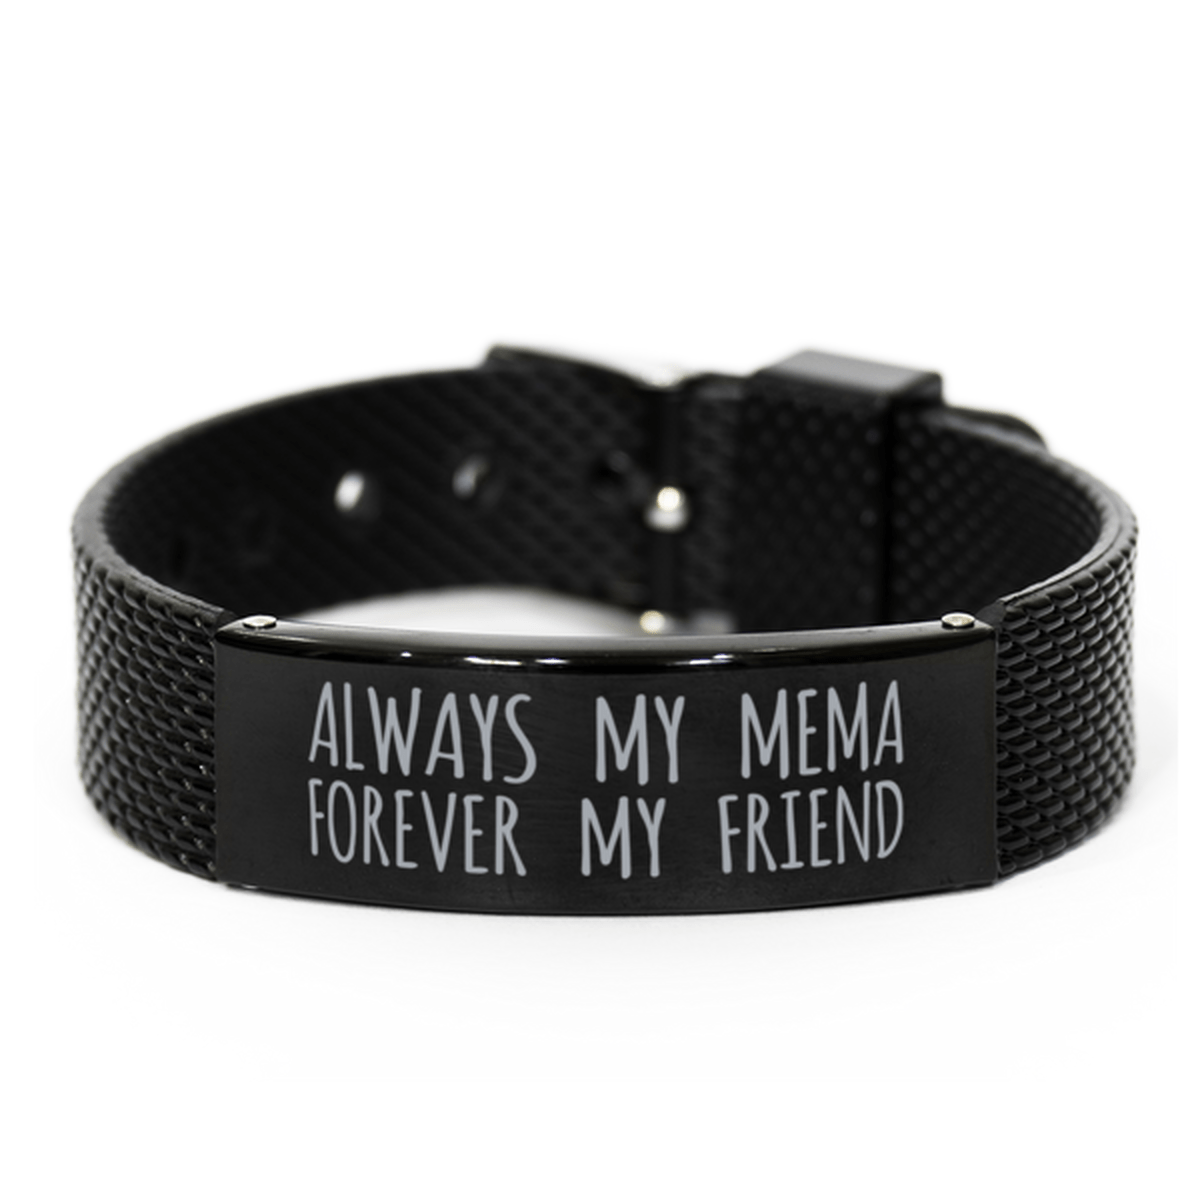 Inspirational Mema Black Shark Mesh Bracelet, Always My Mema Forever My Friend, Best Birthday Gifts for Family Friends